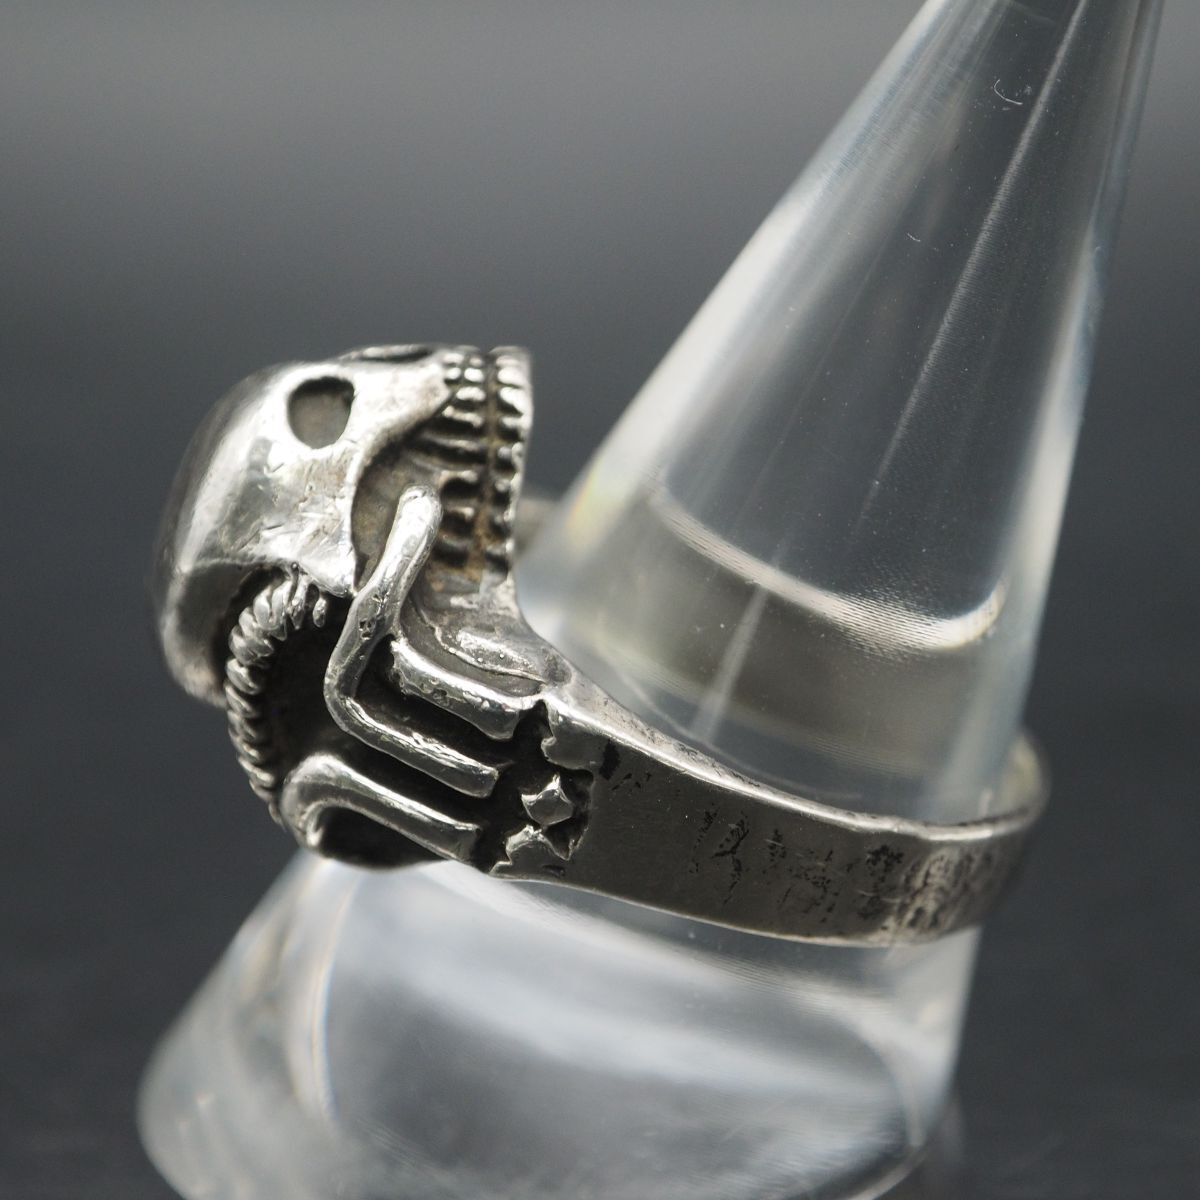 M811 Vintage 925 печать кольцо Skull череп дизайн серебряный кольцо 24 номер 